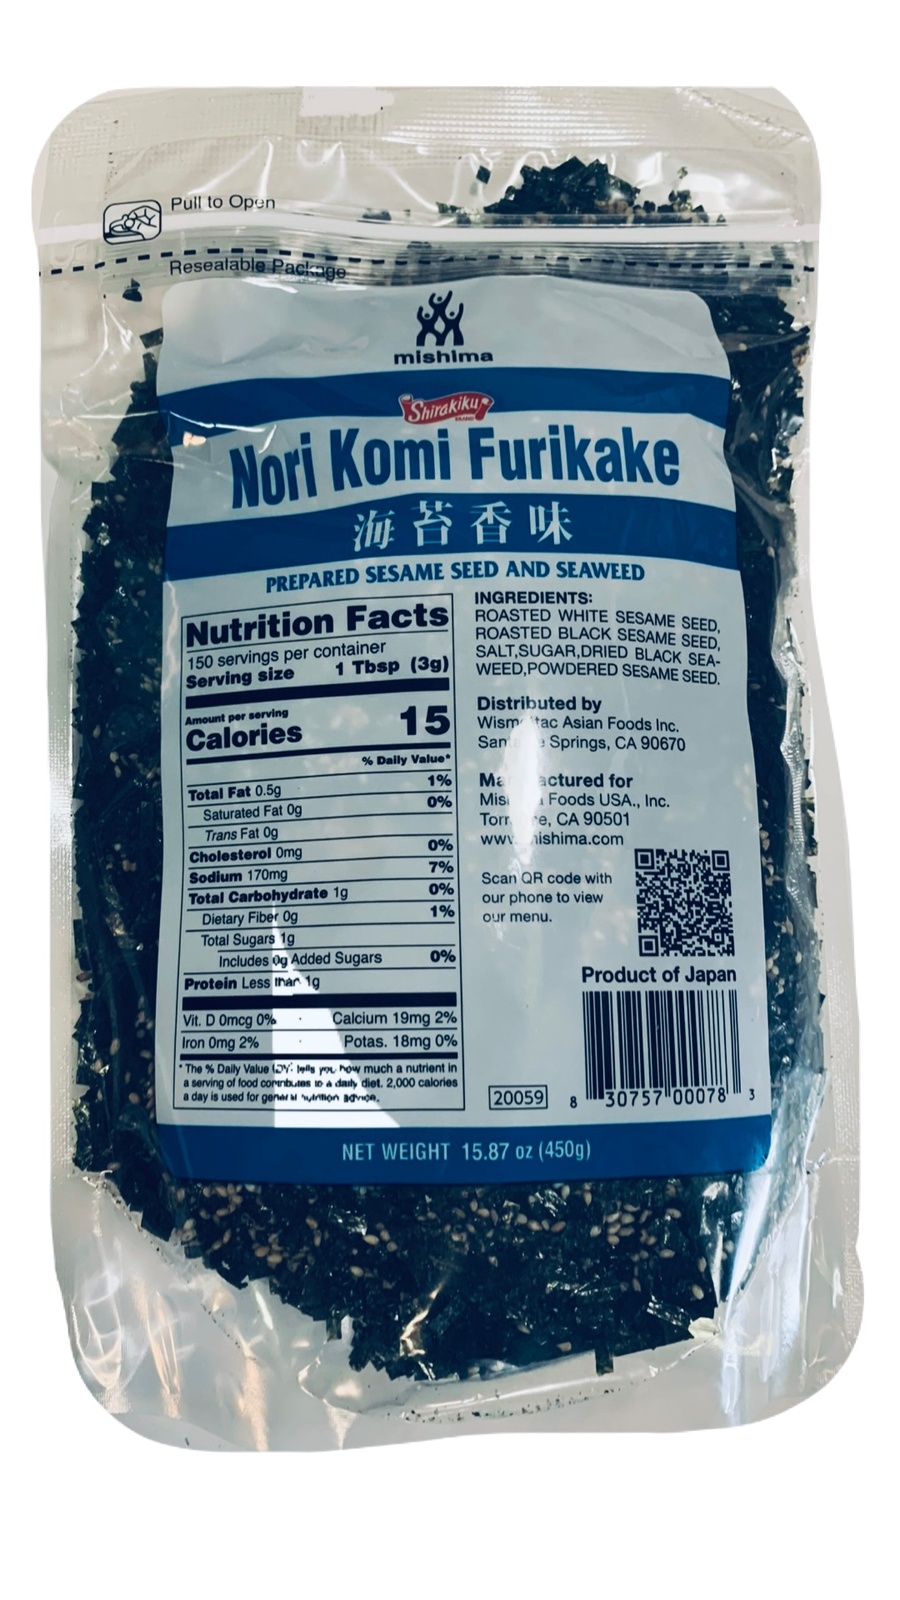 Nori Komi Furikake Seaweed Sesame Seed Seasoning 1 Pound (17.64 oz) - $48.90